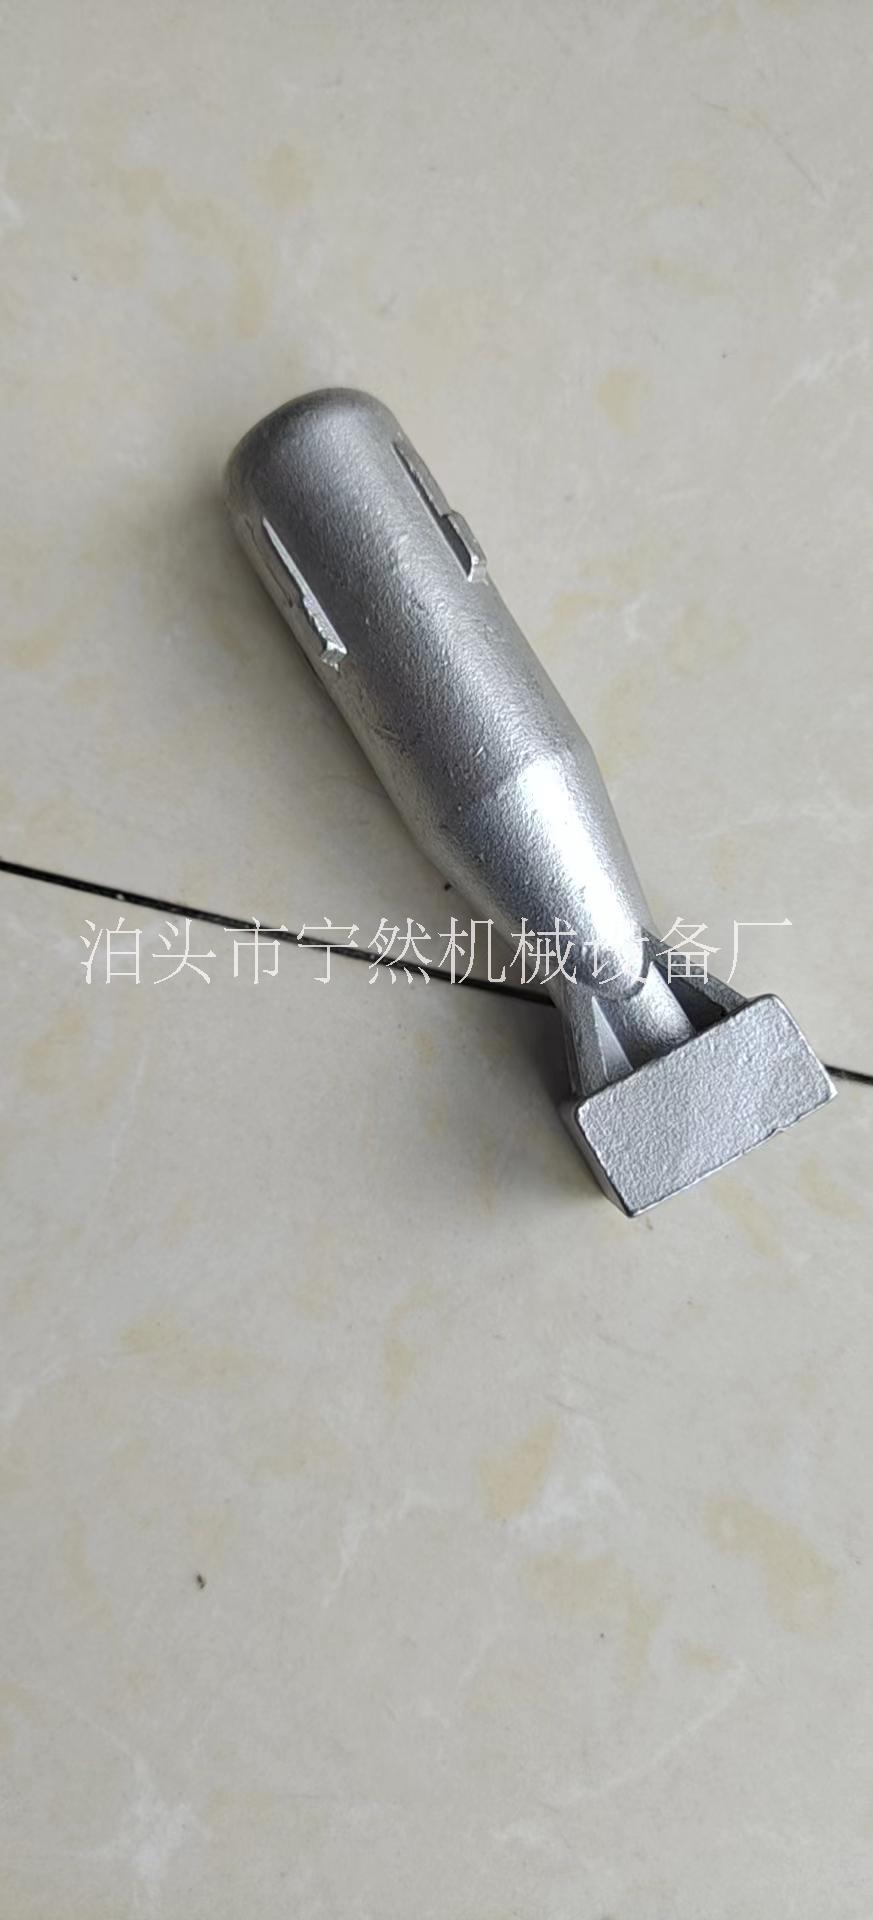 河北沧州沧州厂家供应 砂型浇铸铝 压铸铝件 砂铸铝件定制